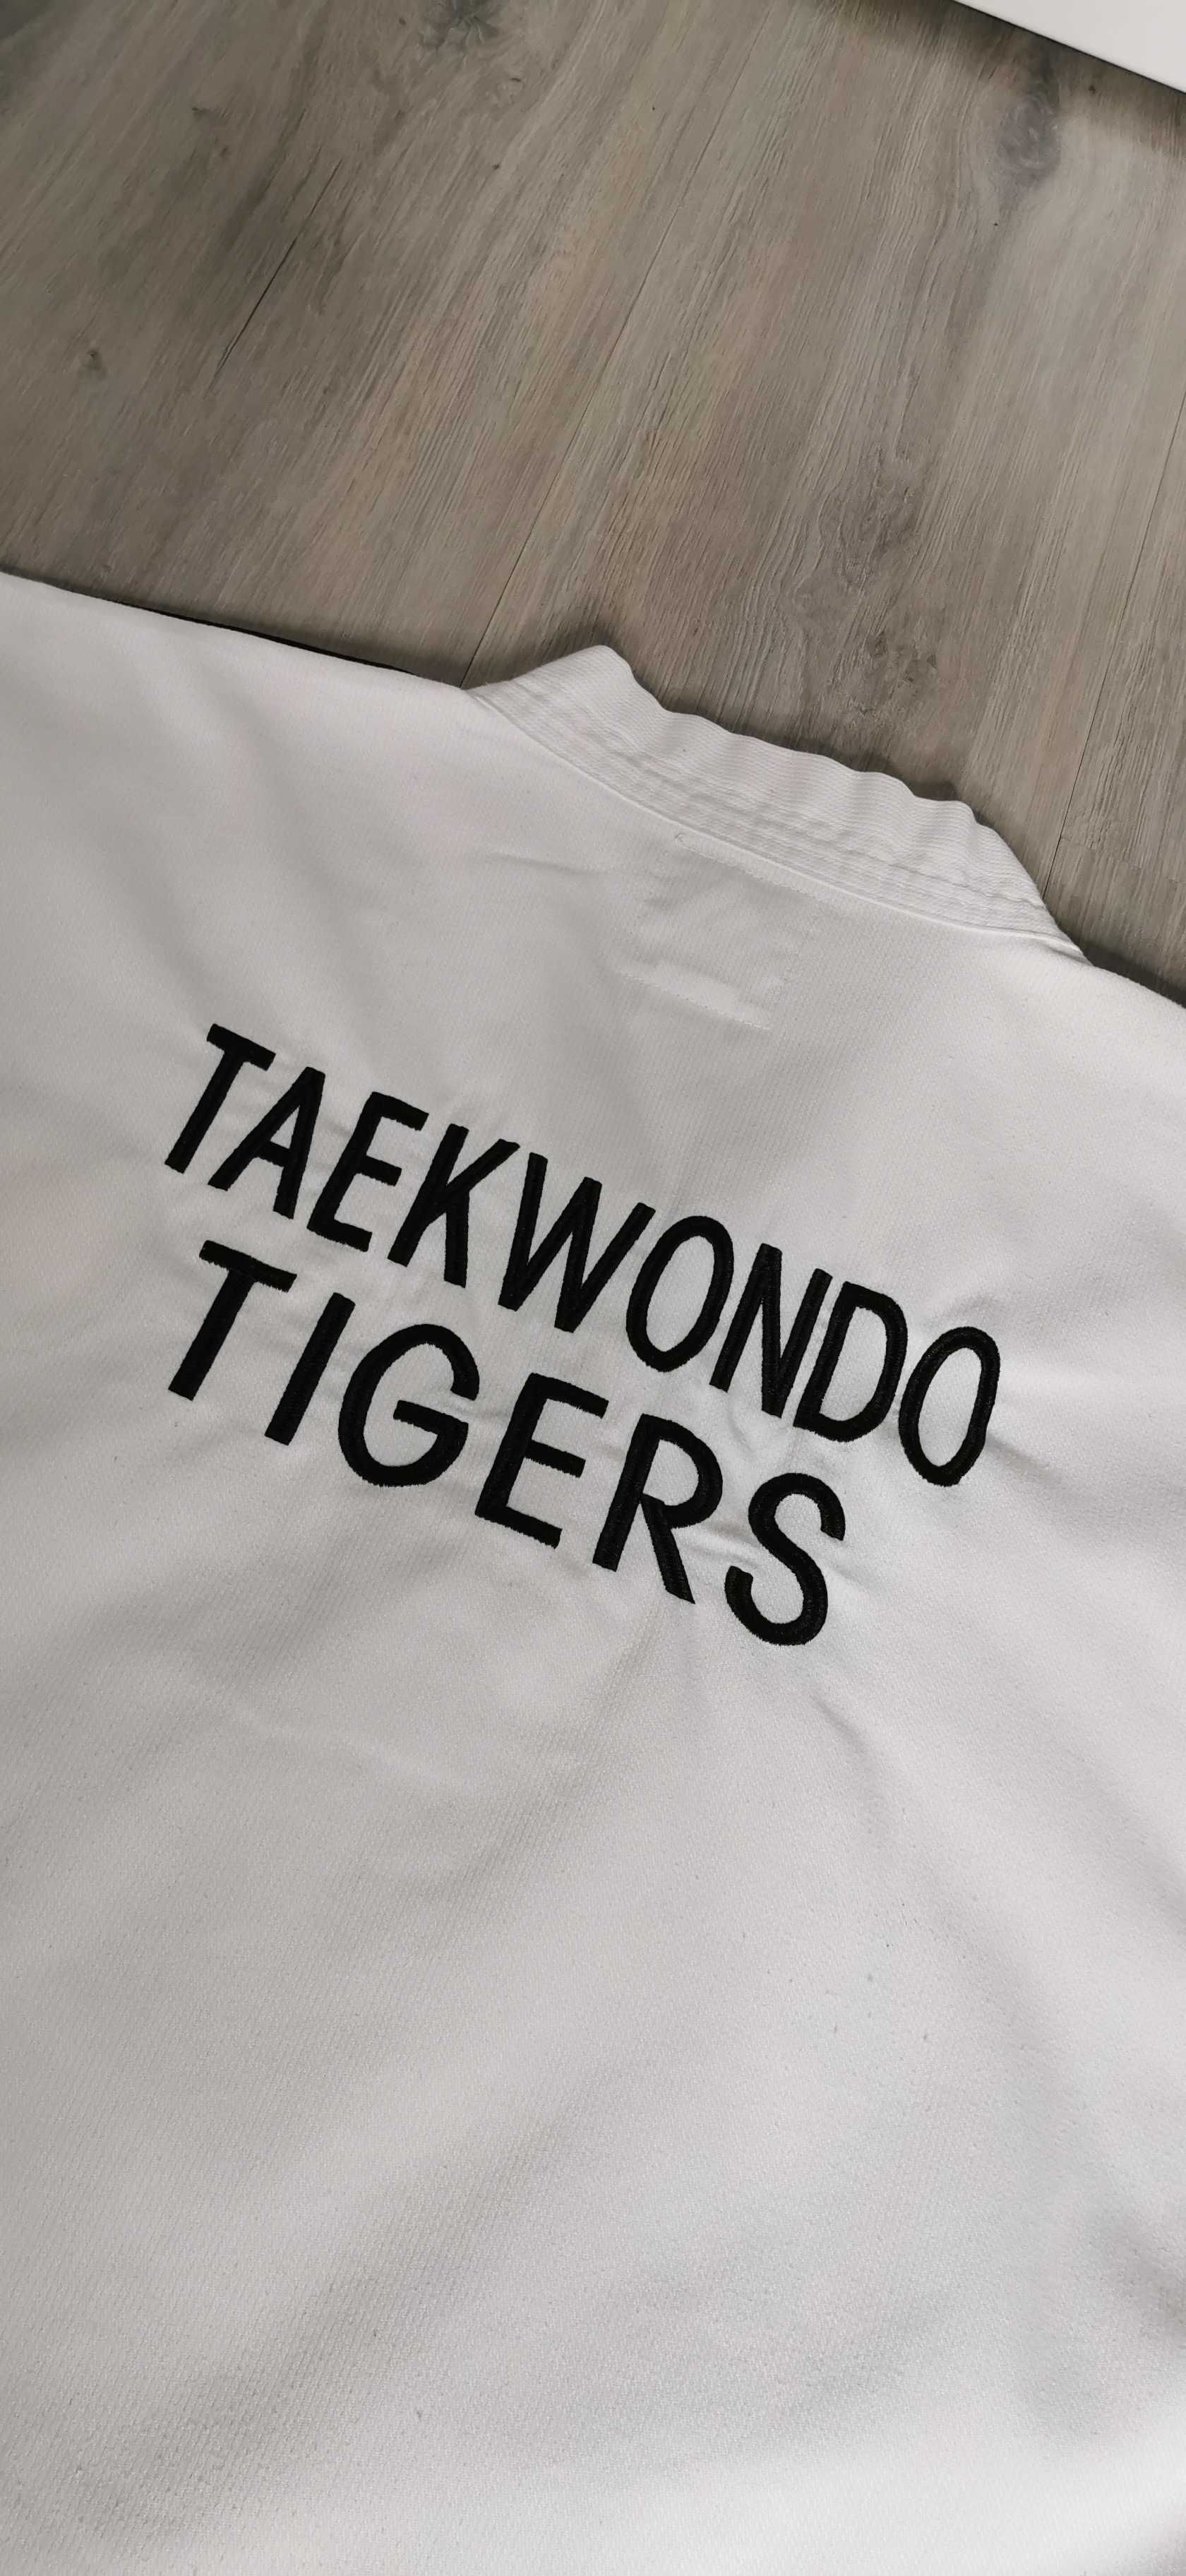 Strój do takewondo Adidas Tigers WTF made in korea rozmiar L/XL